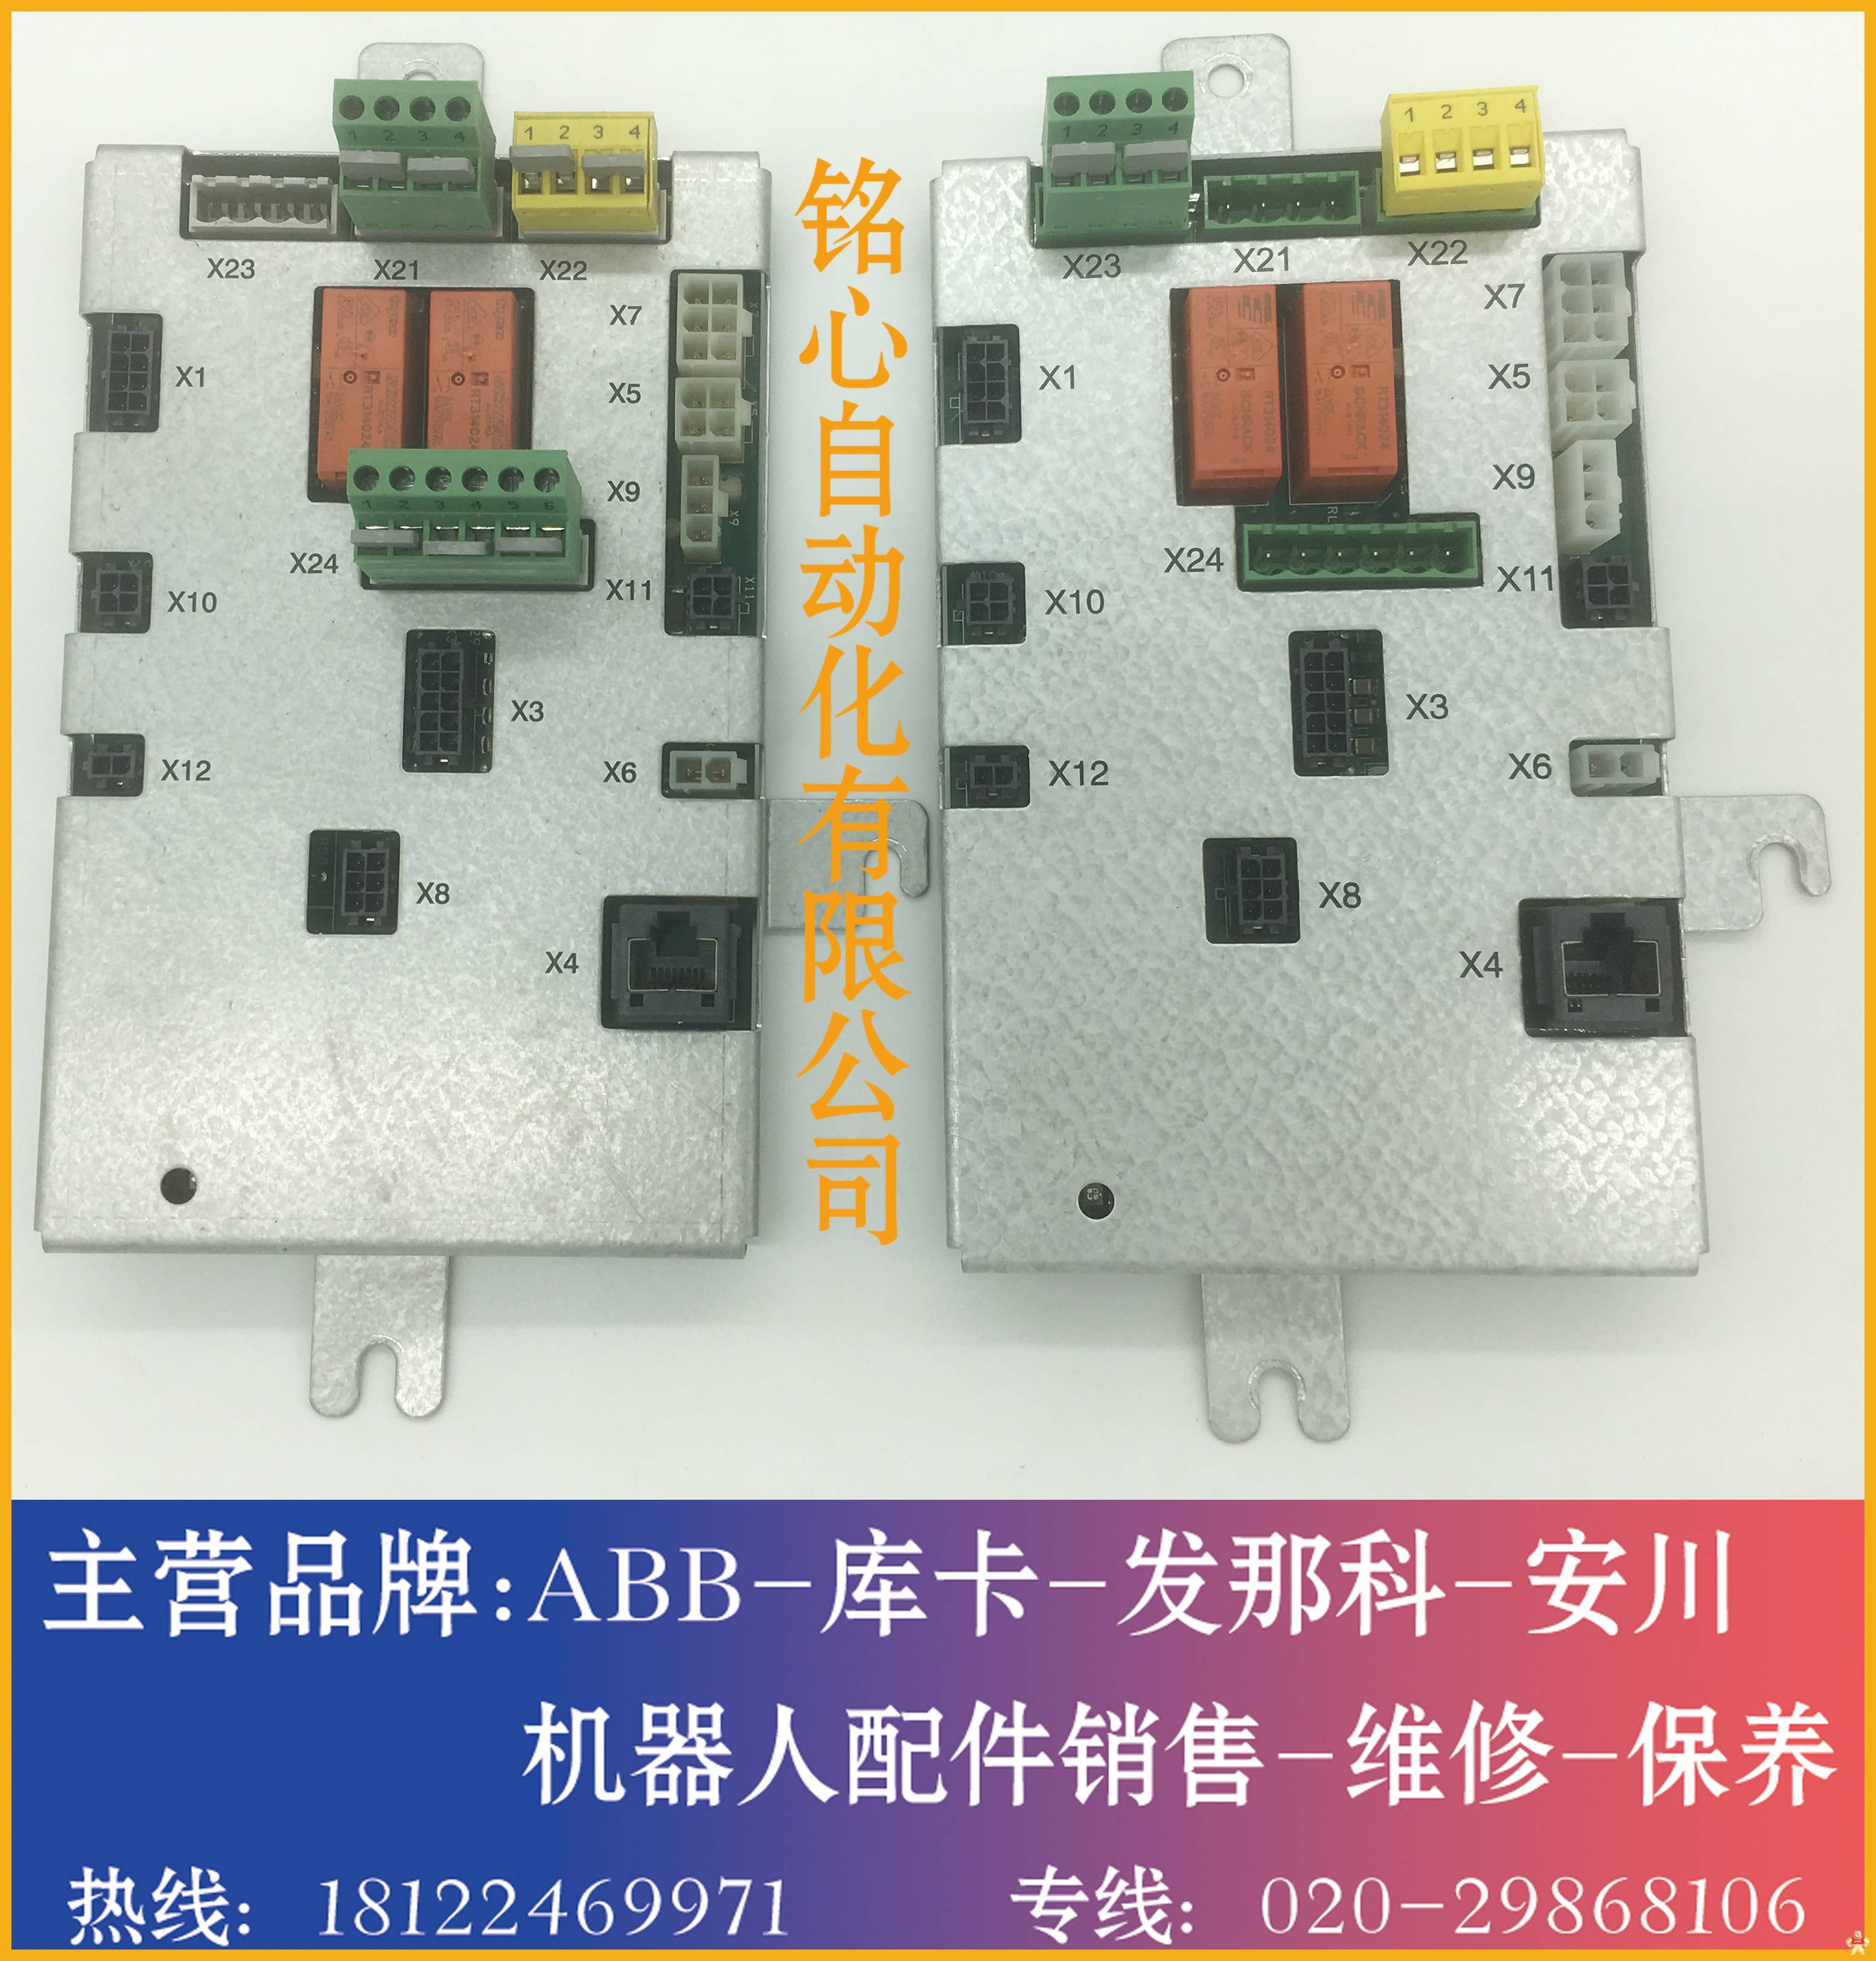 ABB机器人电源分配板 DSQC611 3HAC13389-2 销售 维修 DSQC611 3HAC13389-2,电源分配板,ABB机器人